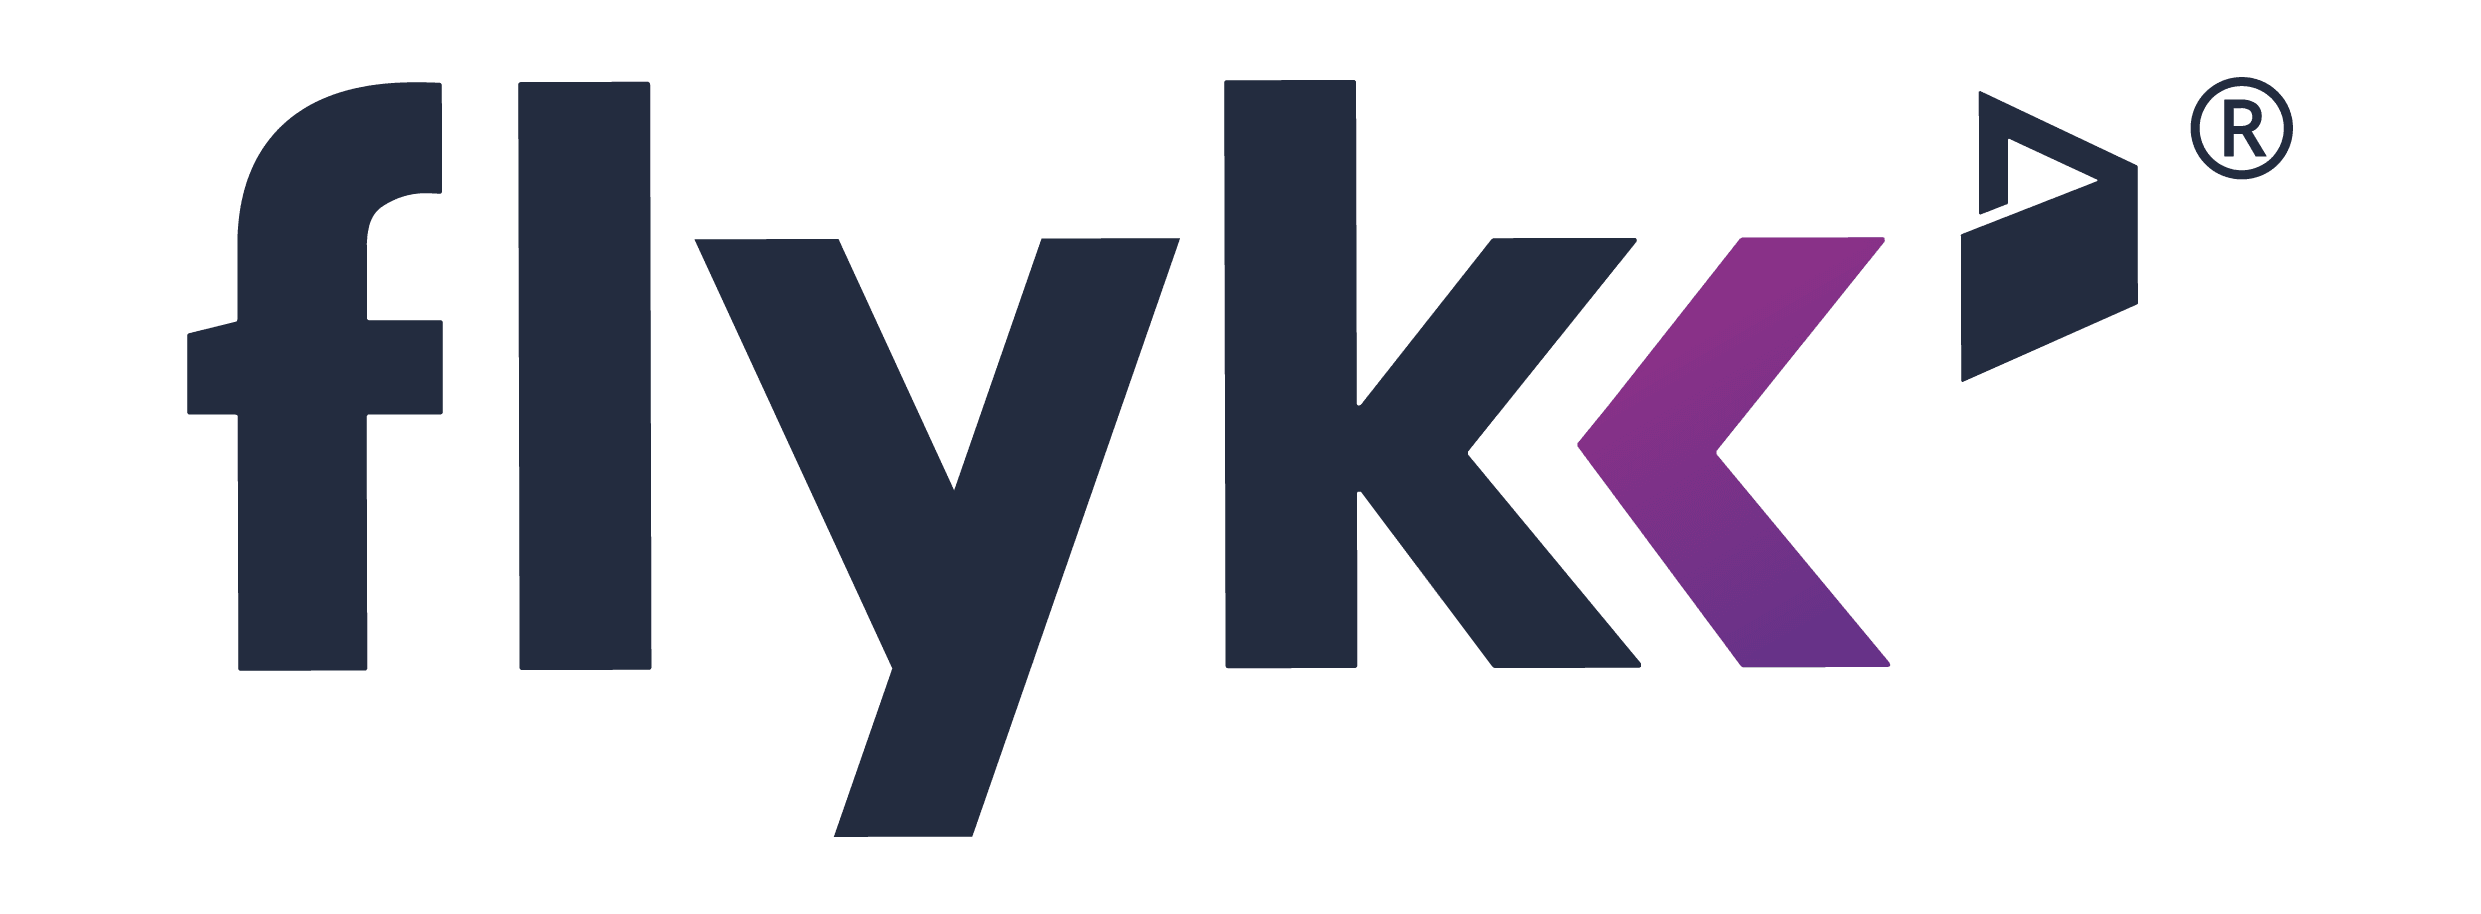 Parhaat online-kasinot, jotka hyväksyvät Flykk